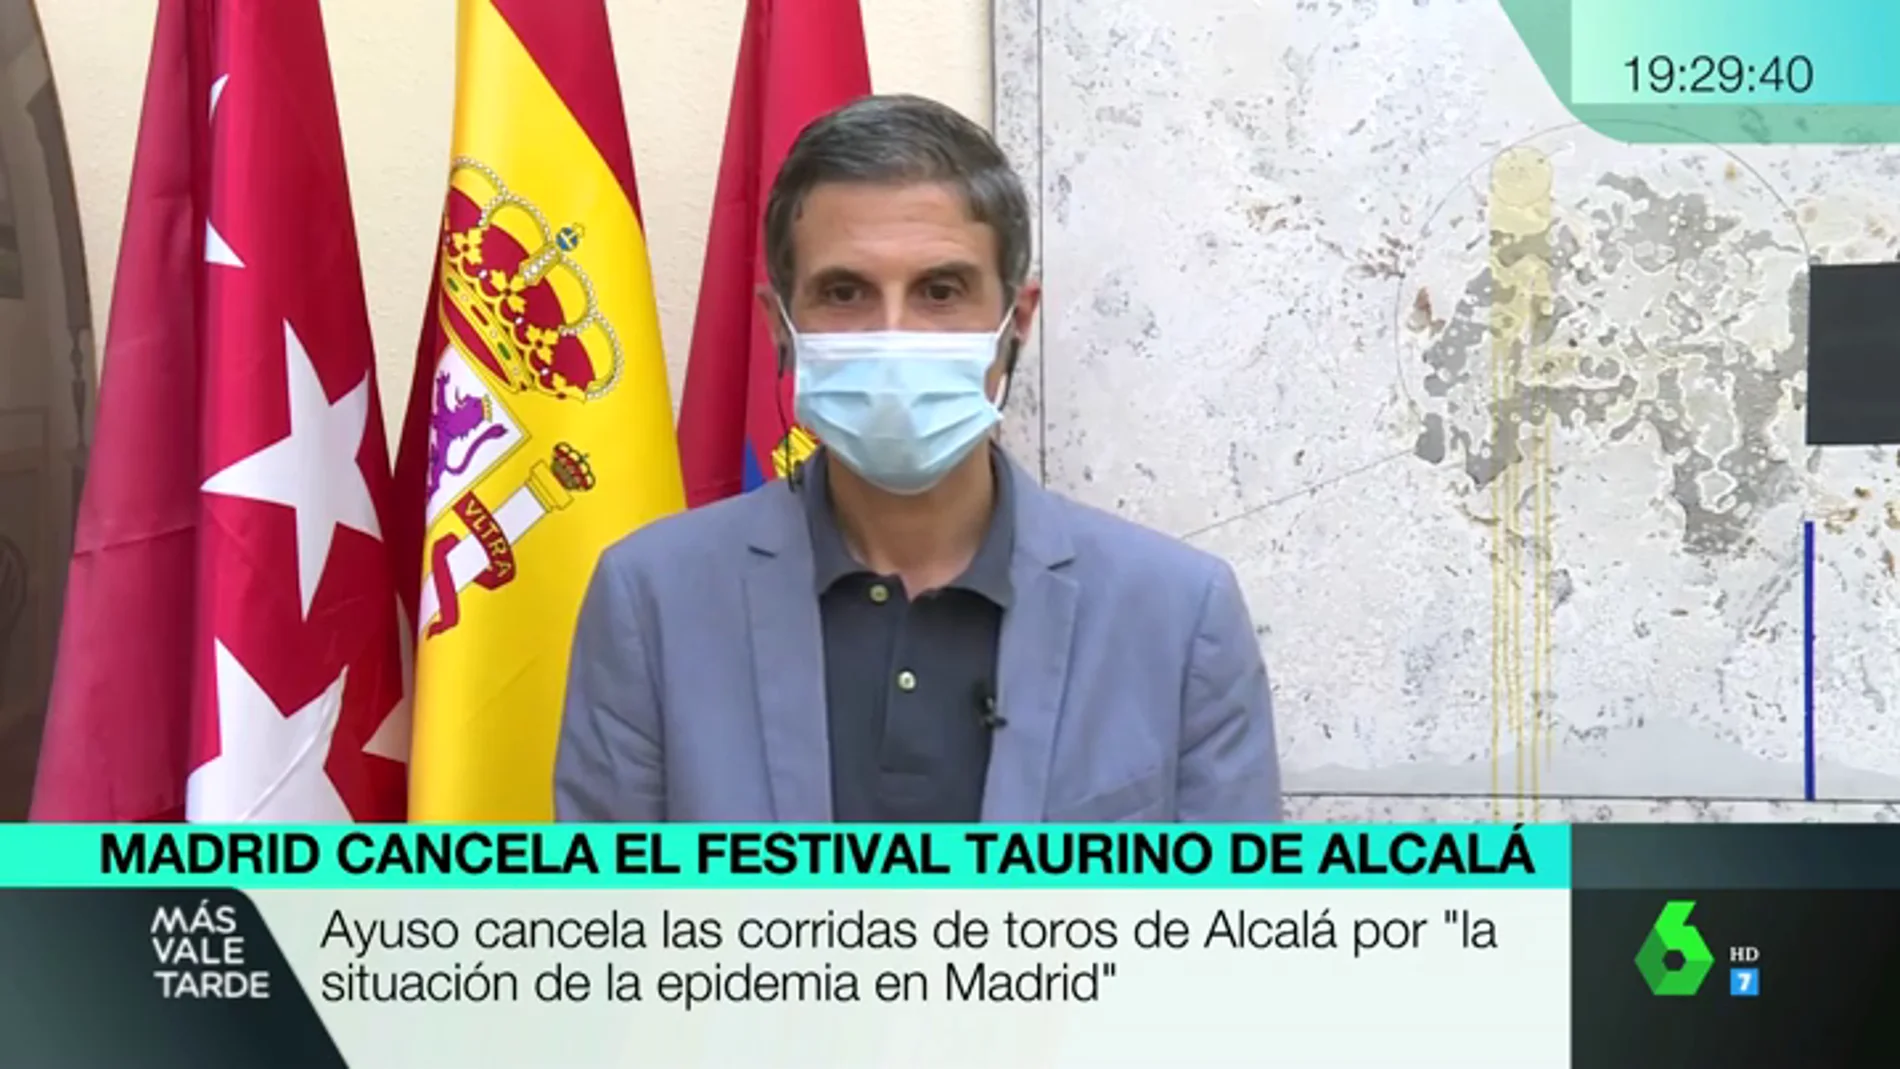 Habla el alcalde de Alcalá de Henares: "Ayuso dijo que desaconsejaba la corrida de toros, pero hay que gobernar y tomar medidas"